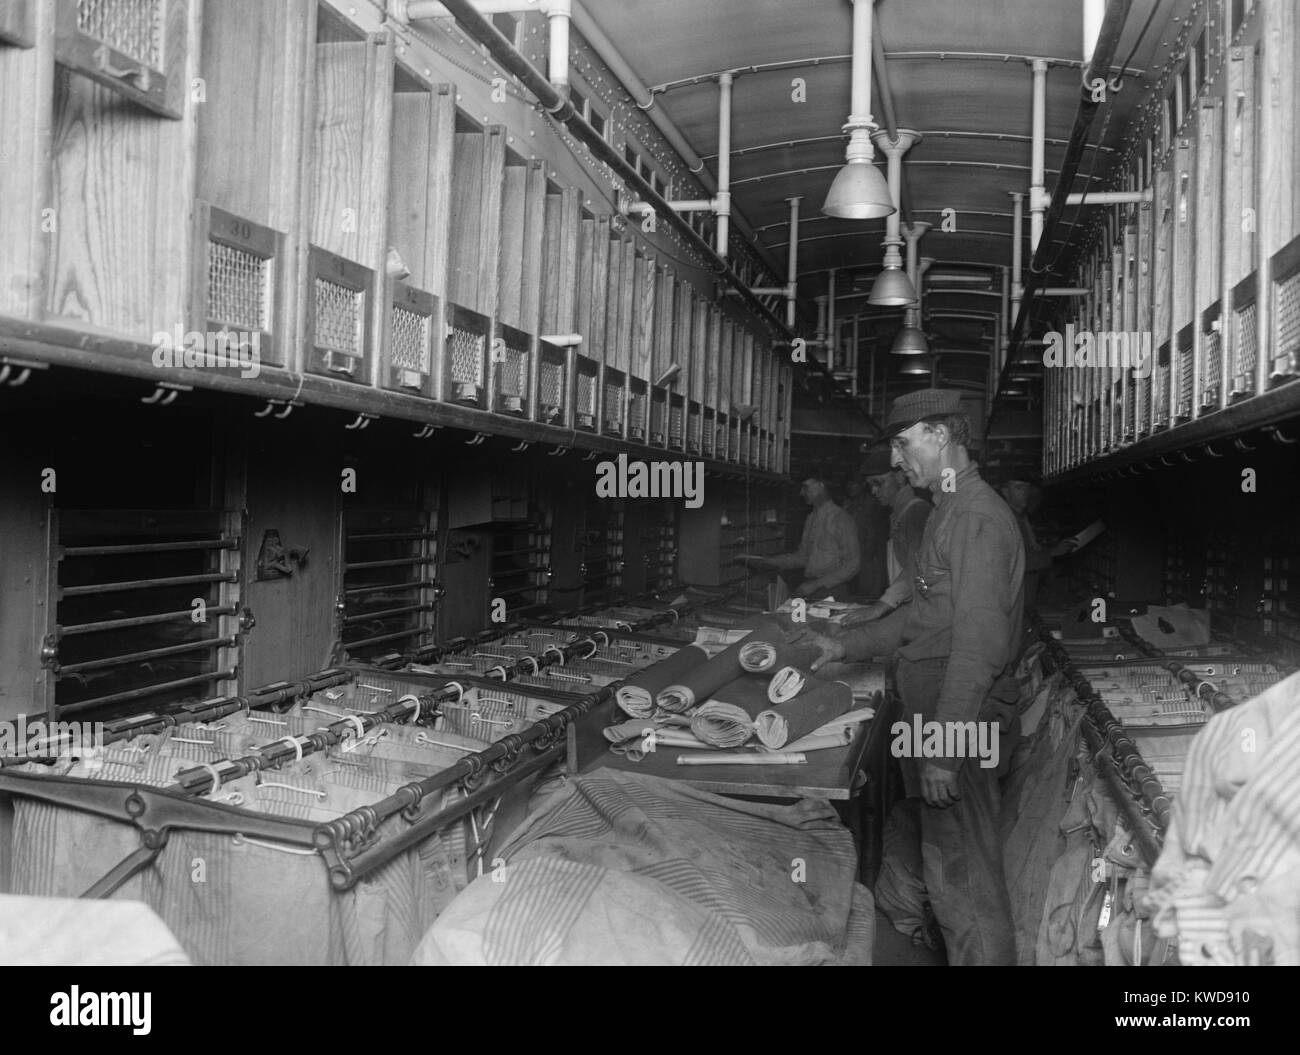 Bahn Post (RPO) Sekretärinnen Sortierung mail an Bord eine angepasste Schiene Auto 1924. RPO Sekretärinnen verbrachten Tage weg von zu Hause, auf Reisen durch Amerika (BSLOC 2016 8 26) Stockfoto